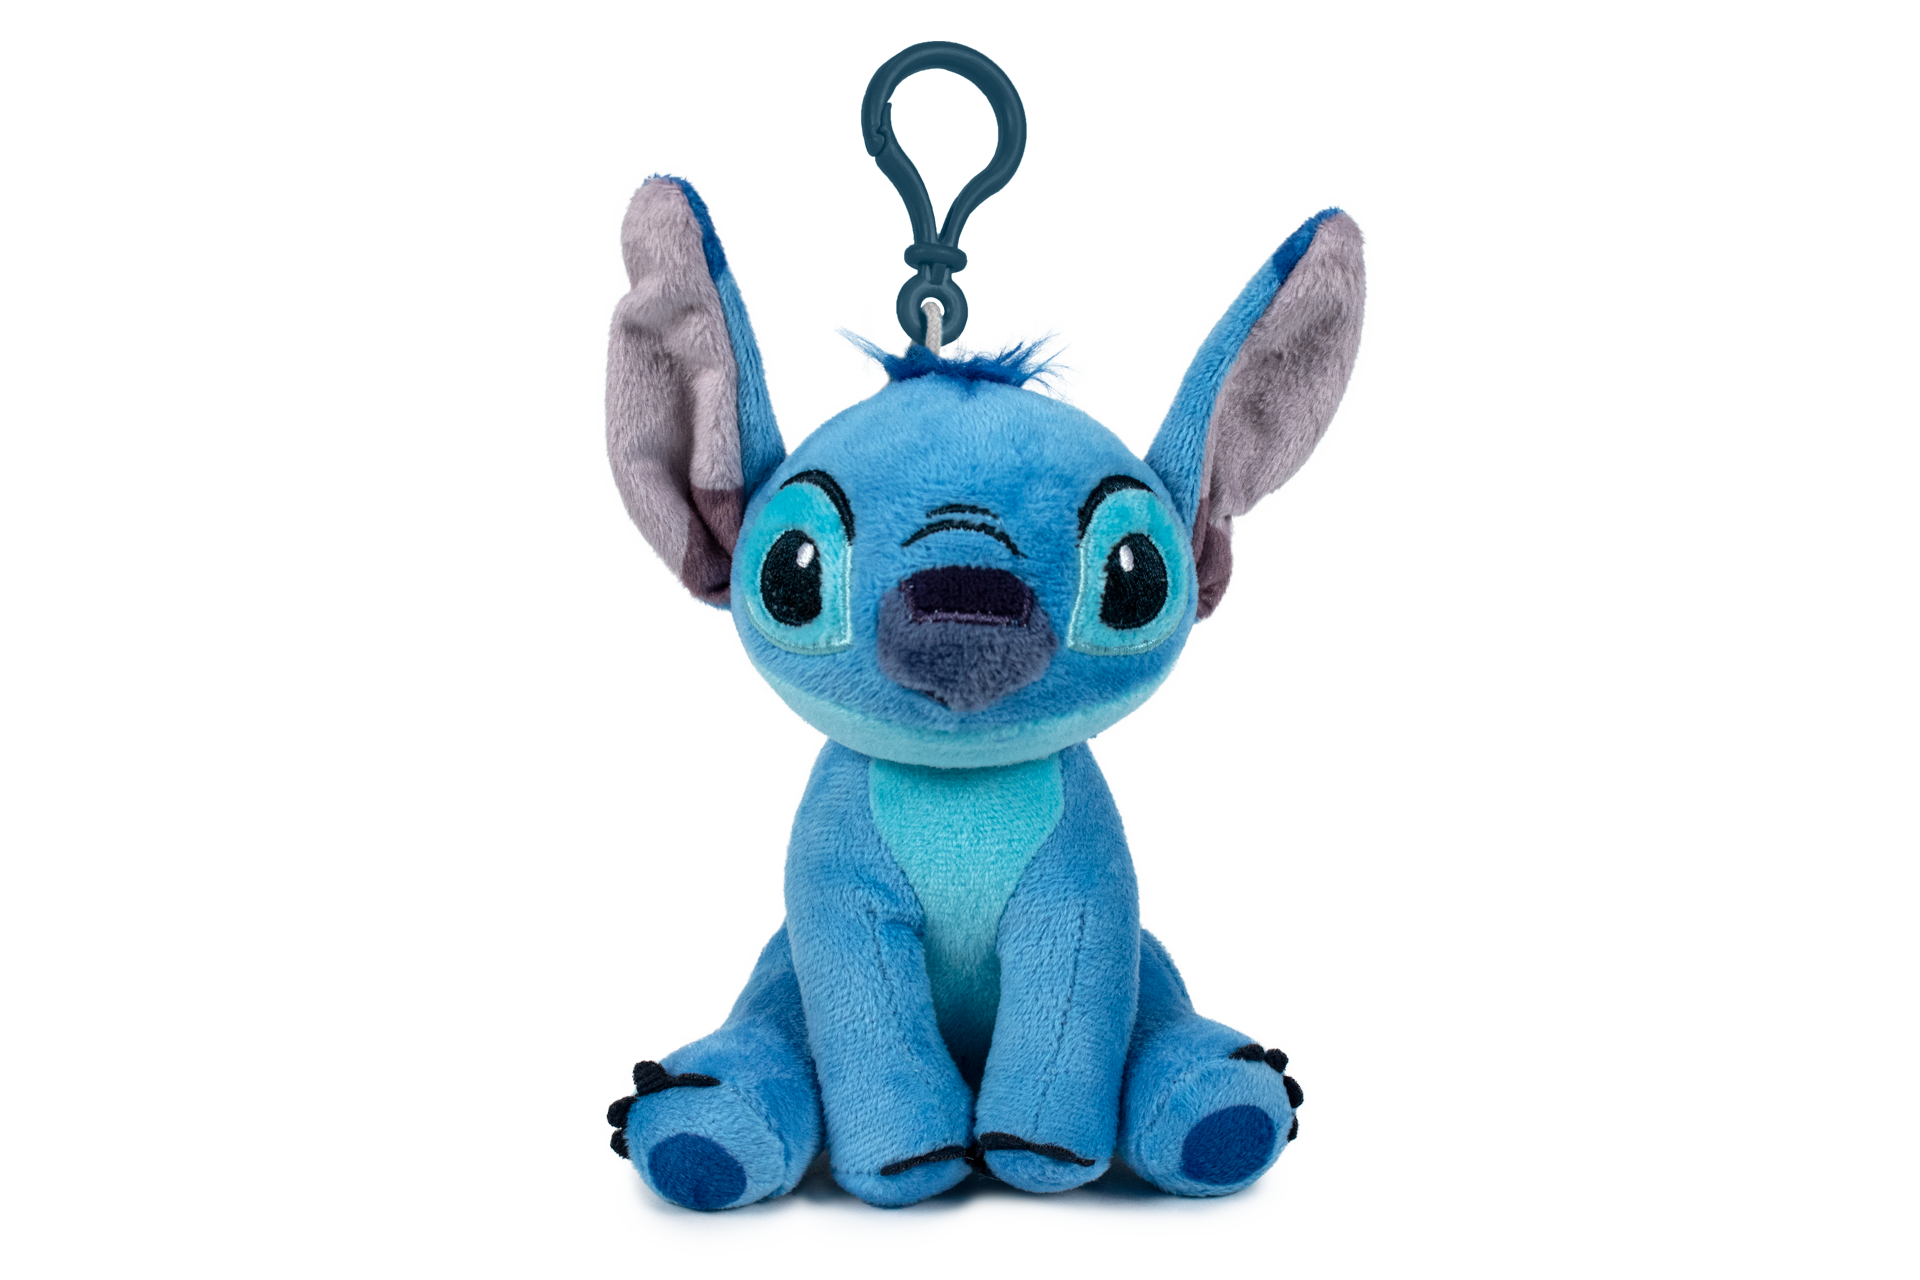 Peluche interactive Stitch Disney Play by Play Lilo et Stitch monstre bleu  sonore 33 cm - Peluches/Peluches Disney - La Boutique Disney